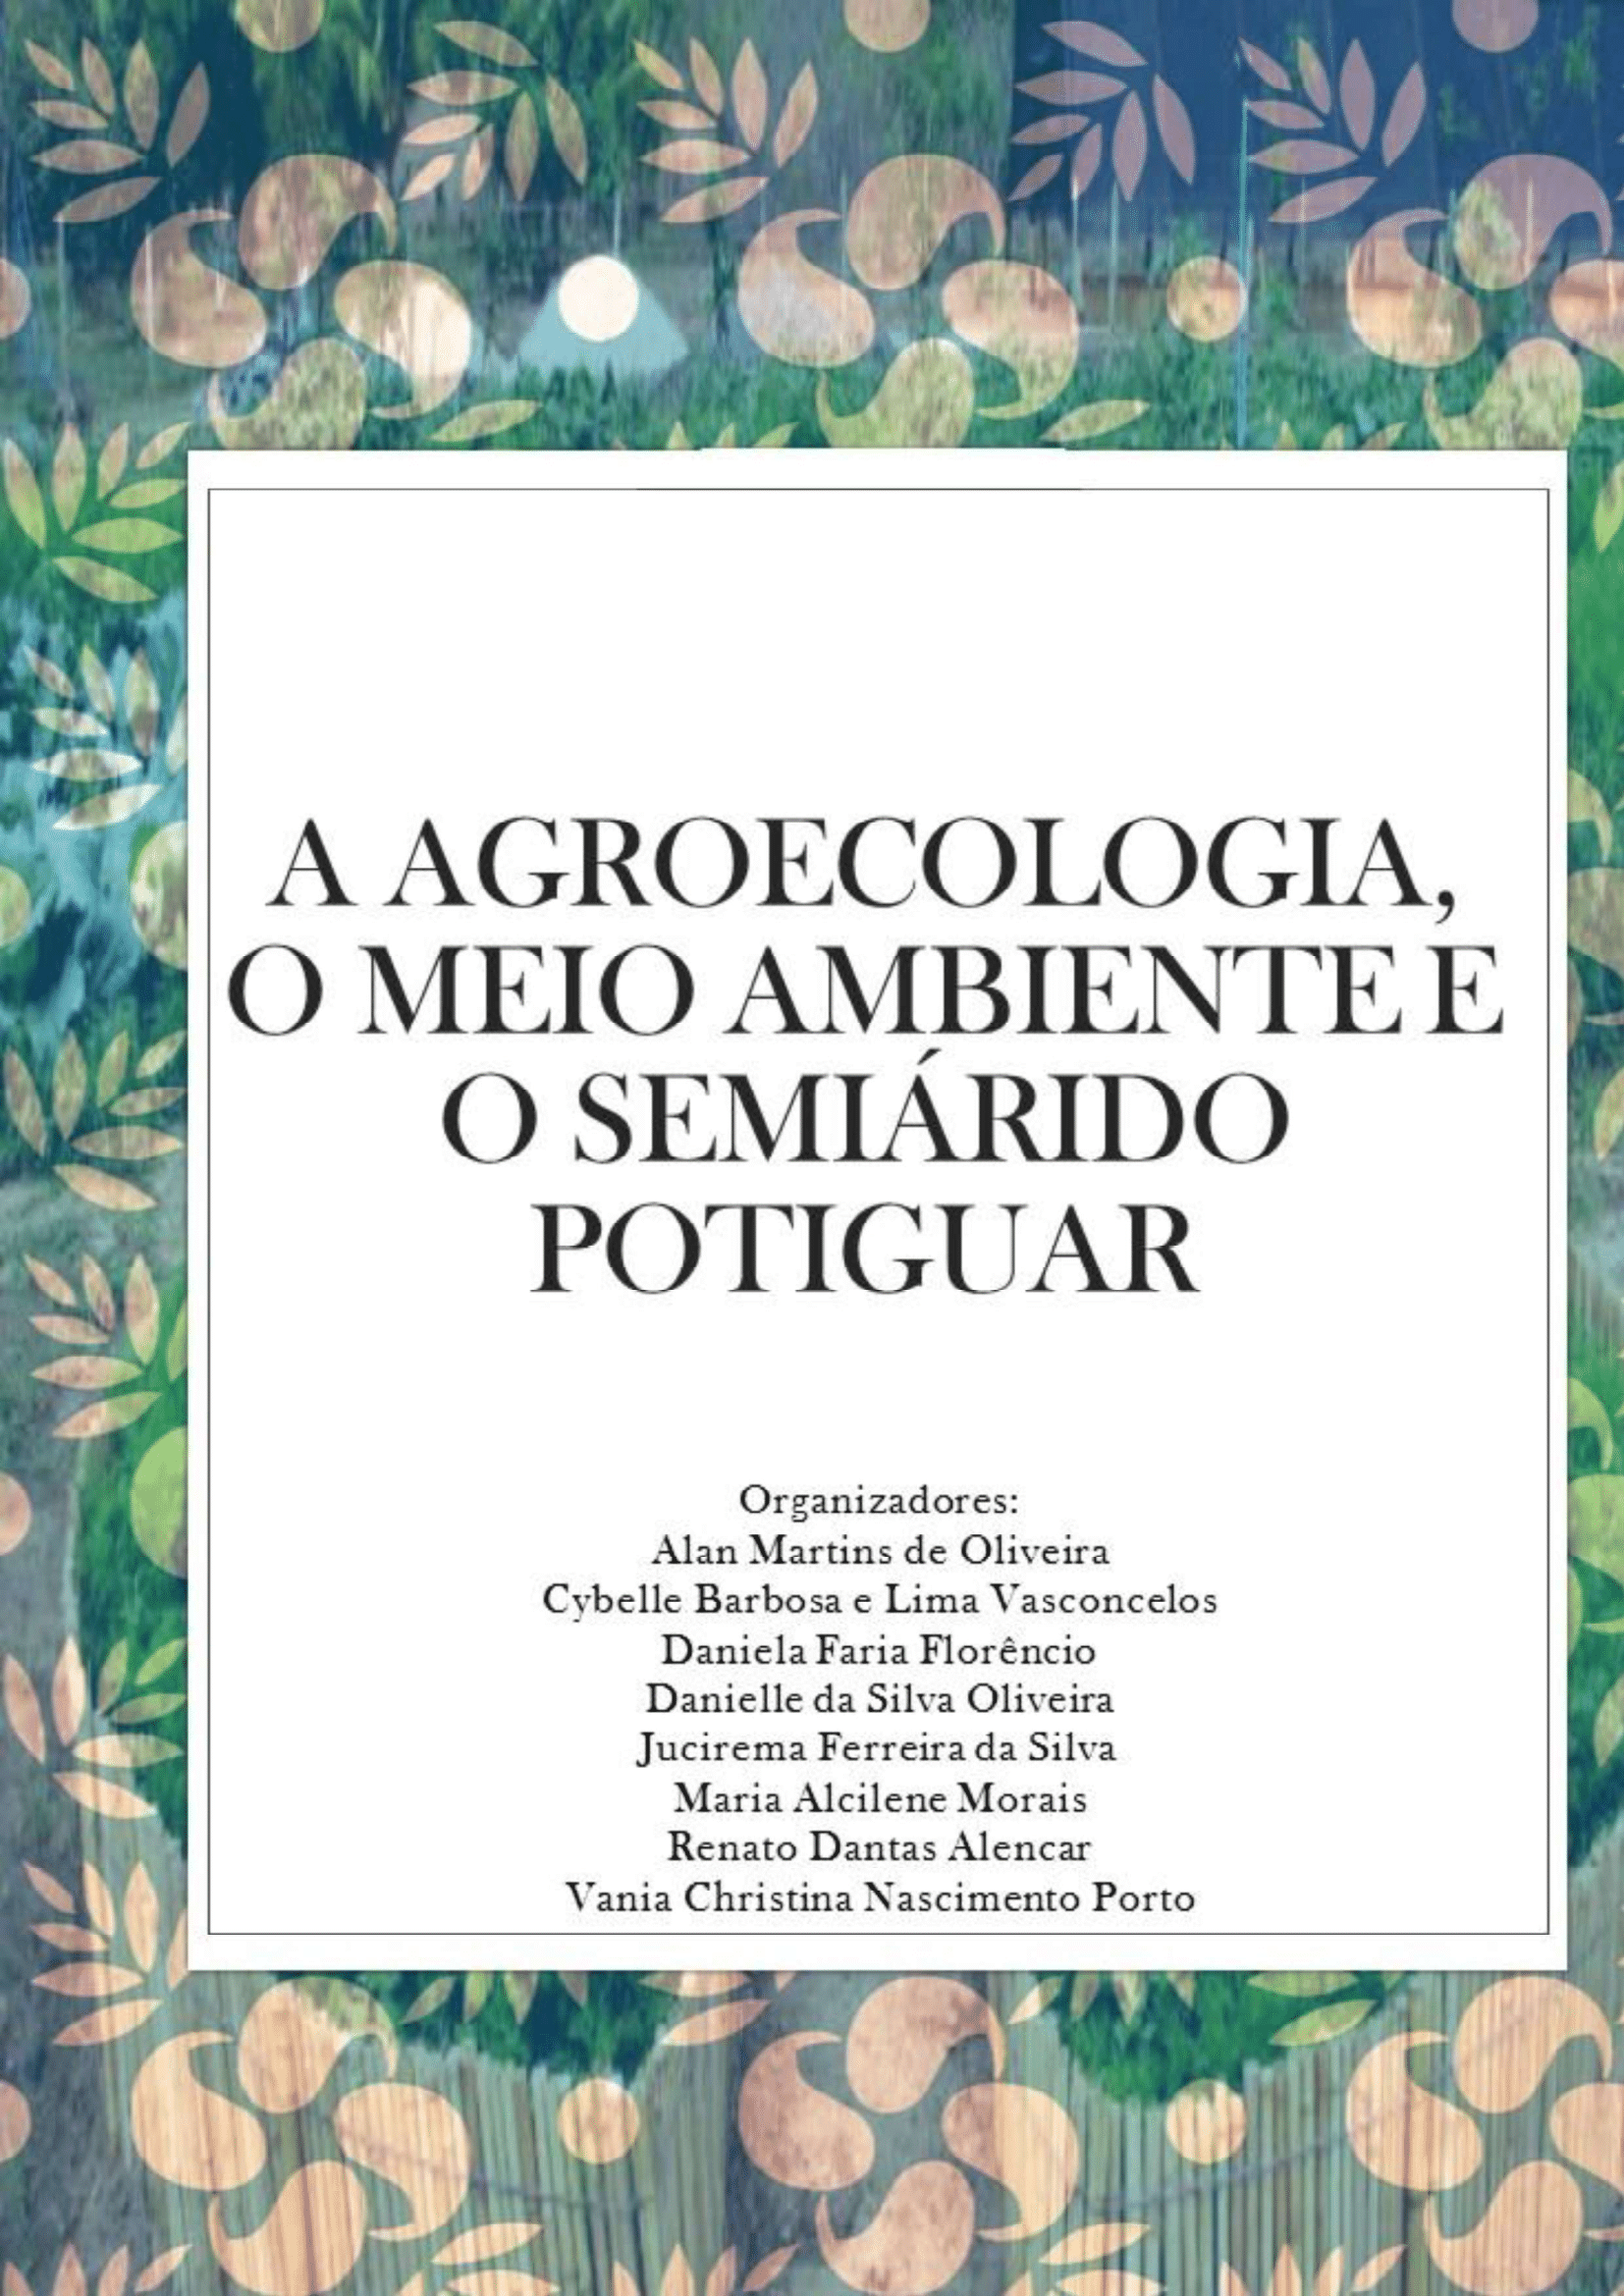 					Ver 2017: I Seminário Potiguar de Agroecologia e Meio Ambiente
				